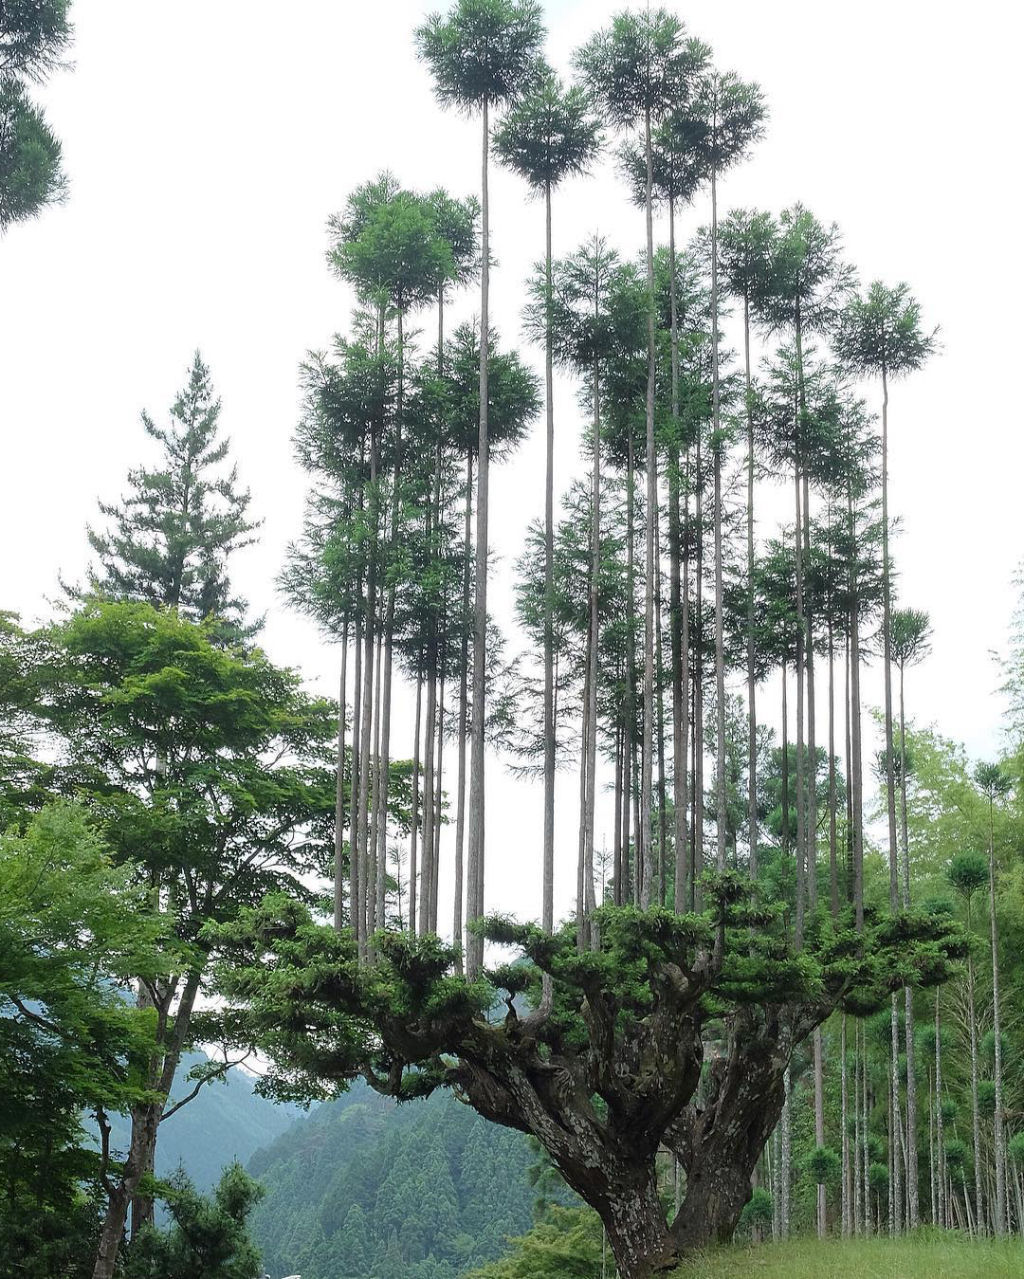 Daisugi, a antiga técnica japonesa de cultivar árvores a partir de outras árvores